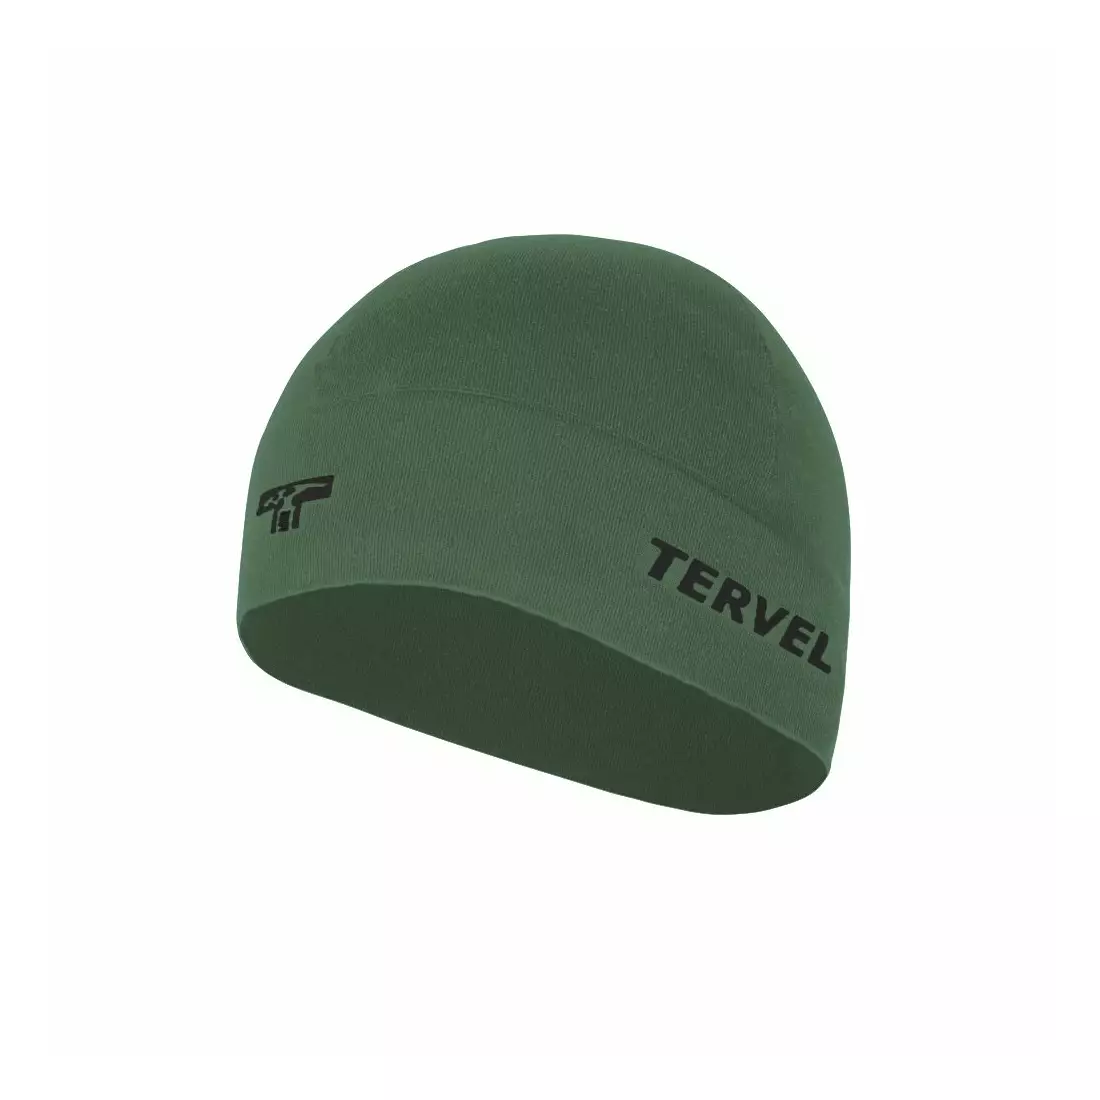 TERVEL 7001 - COMFORTLINE - tréninková čepice, barva: Military, velikost: Univerzální